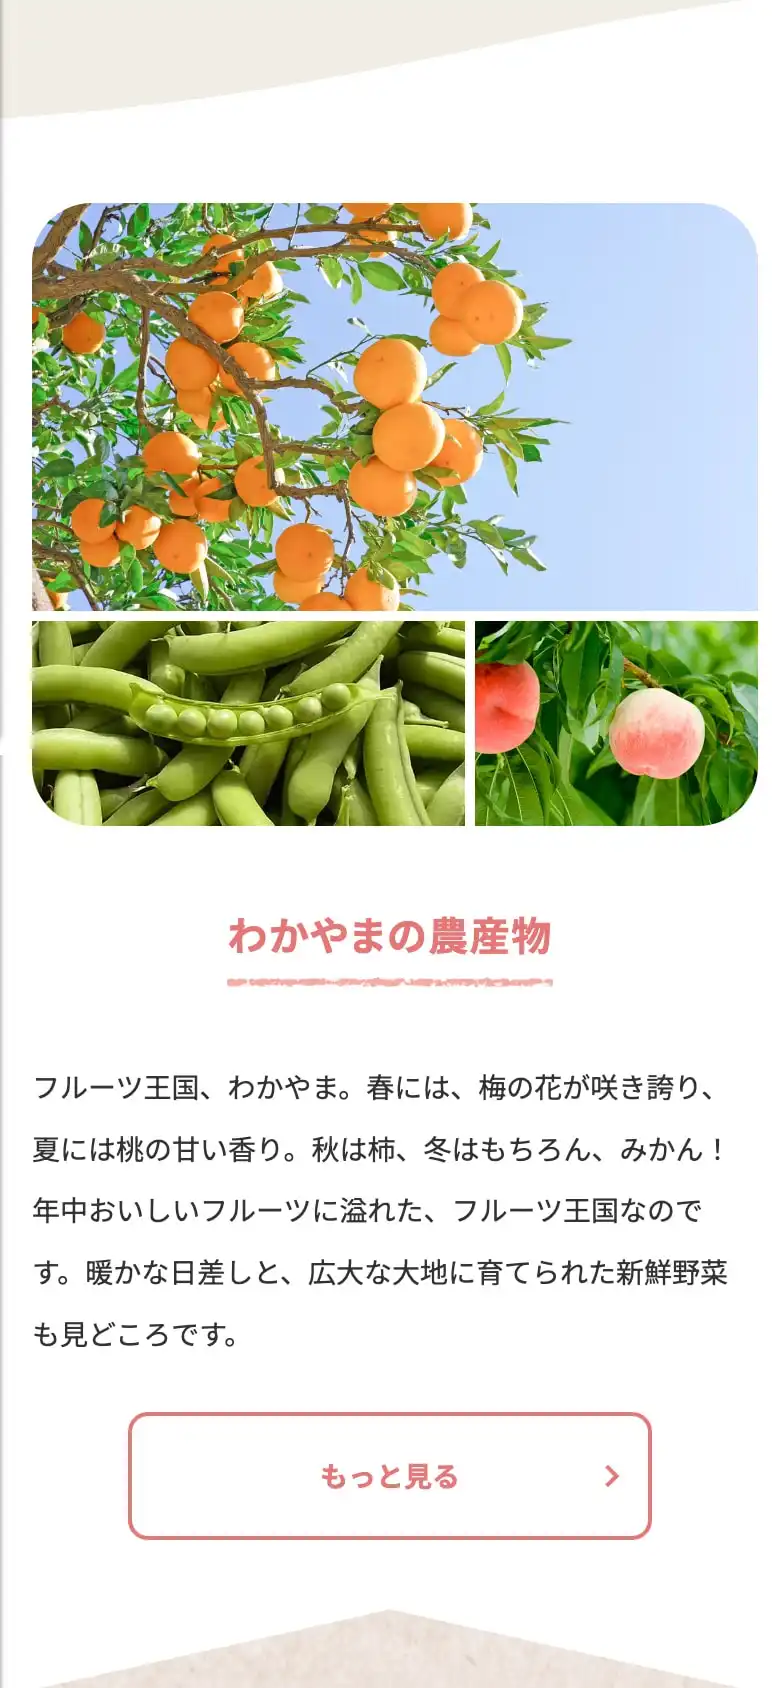 わかやま農産物安心プラス強化事業のWebサイトのスクリーンショット